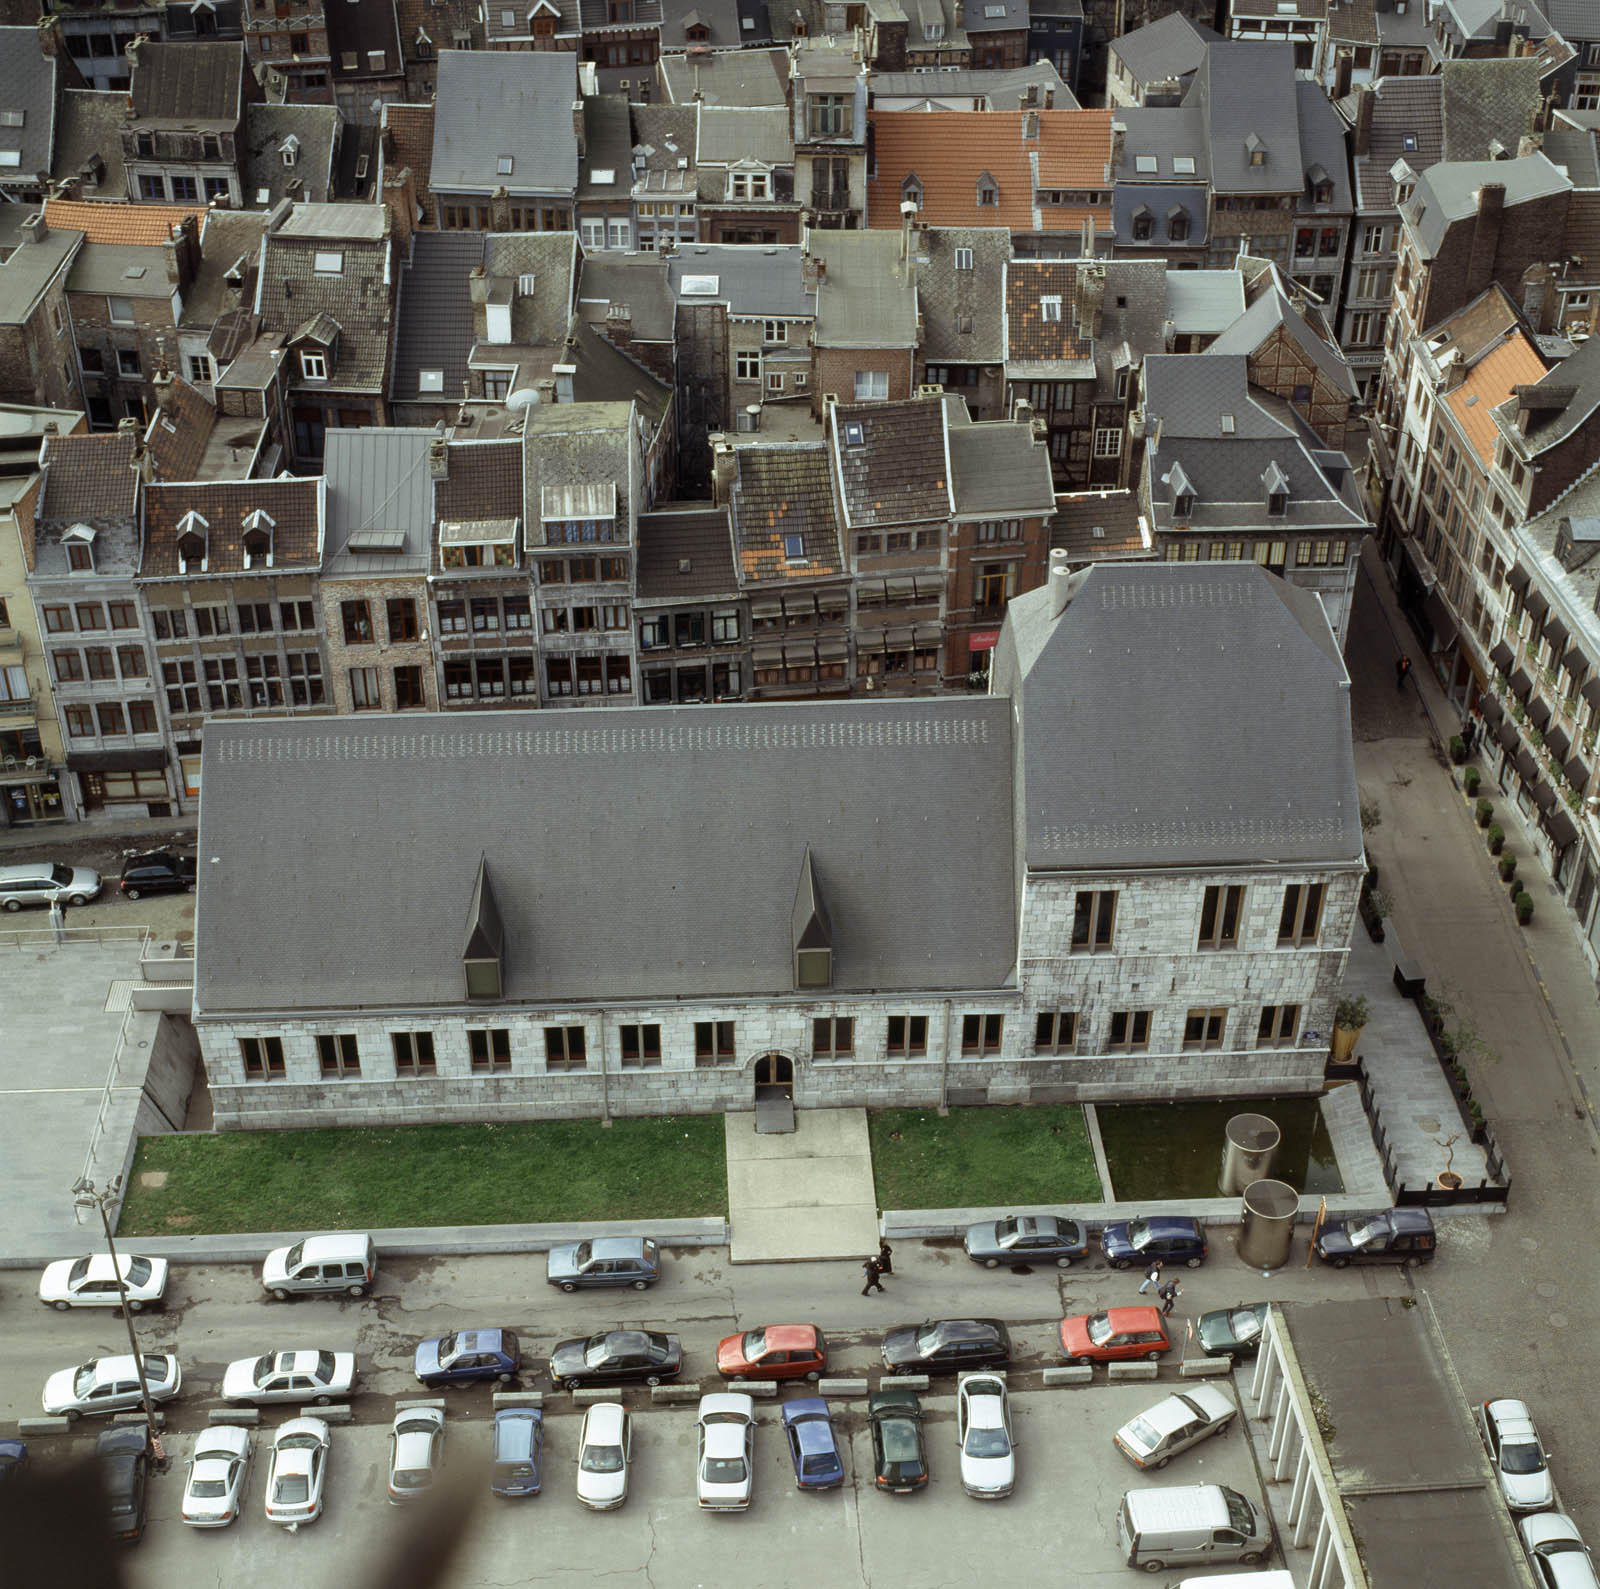 Ancienne halle aux viandes de Liège - G. Focant © SPW